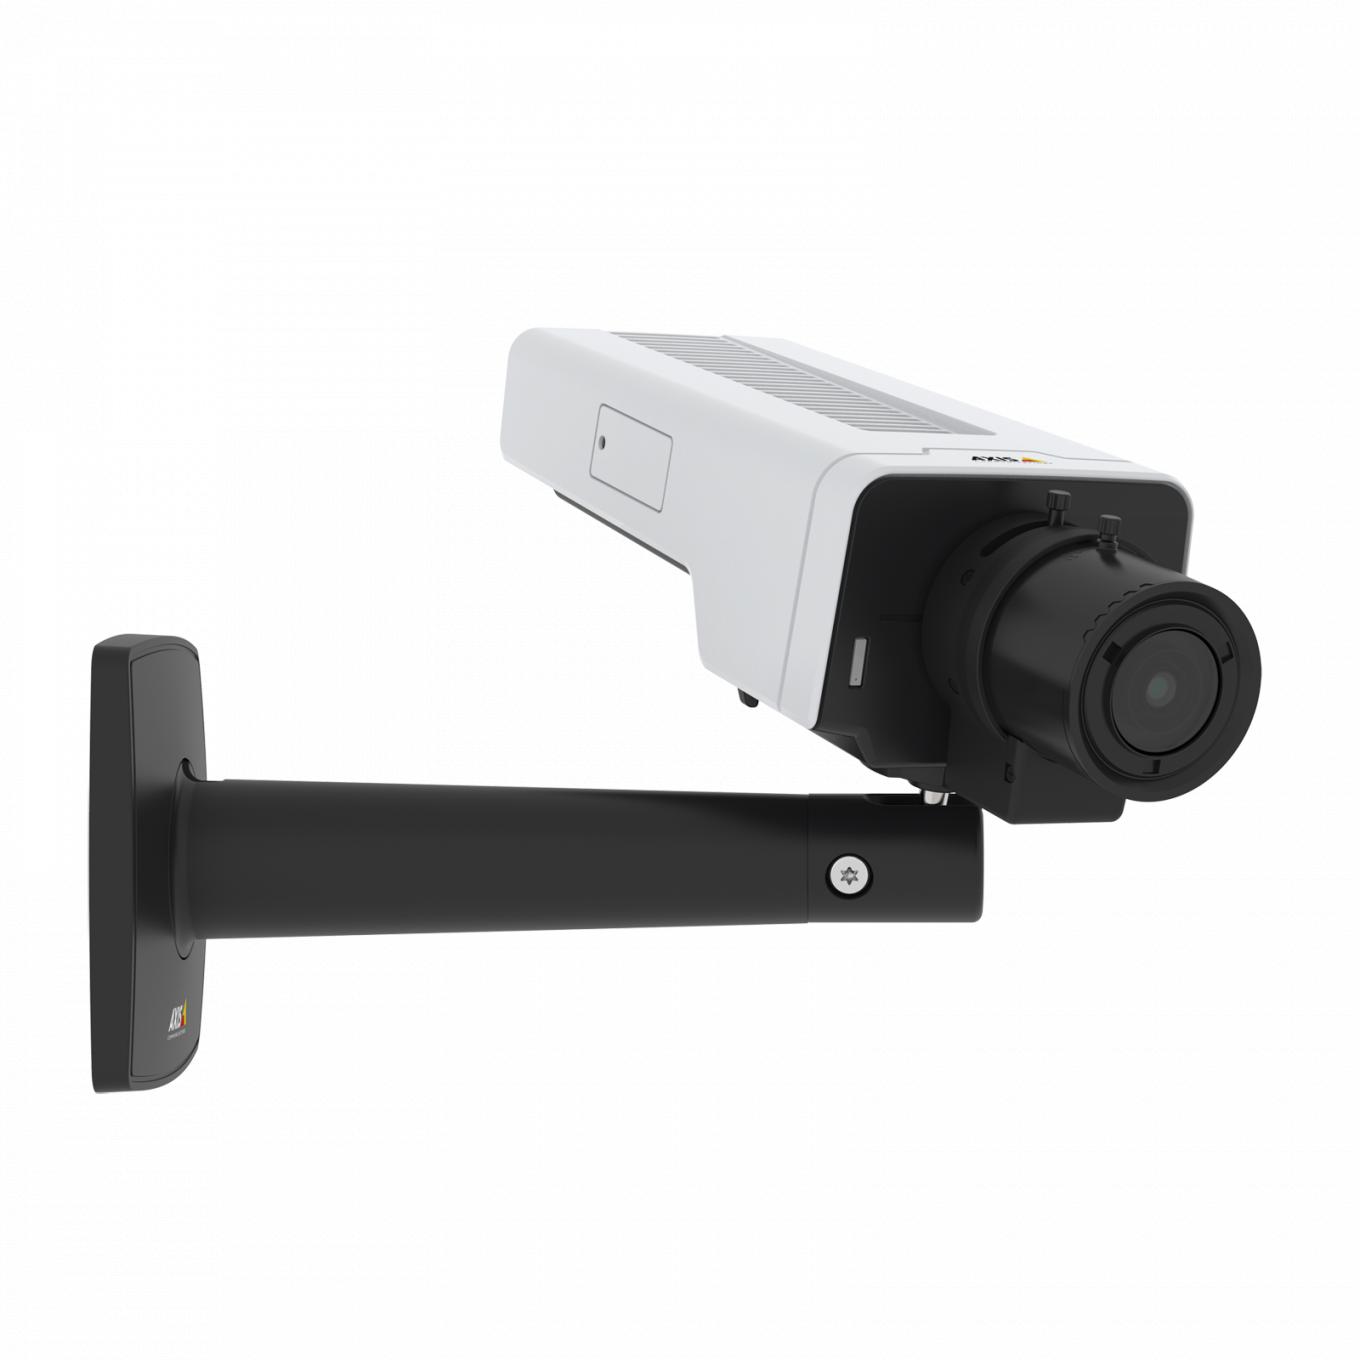 La AXIS P1377 IP Camera tiene Lightfinder y Forensic WDR. El producto se muestra desde el ángulo derecho.